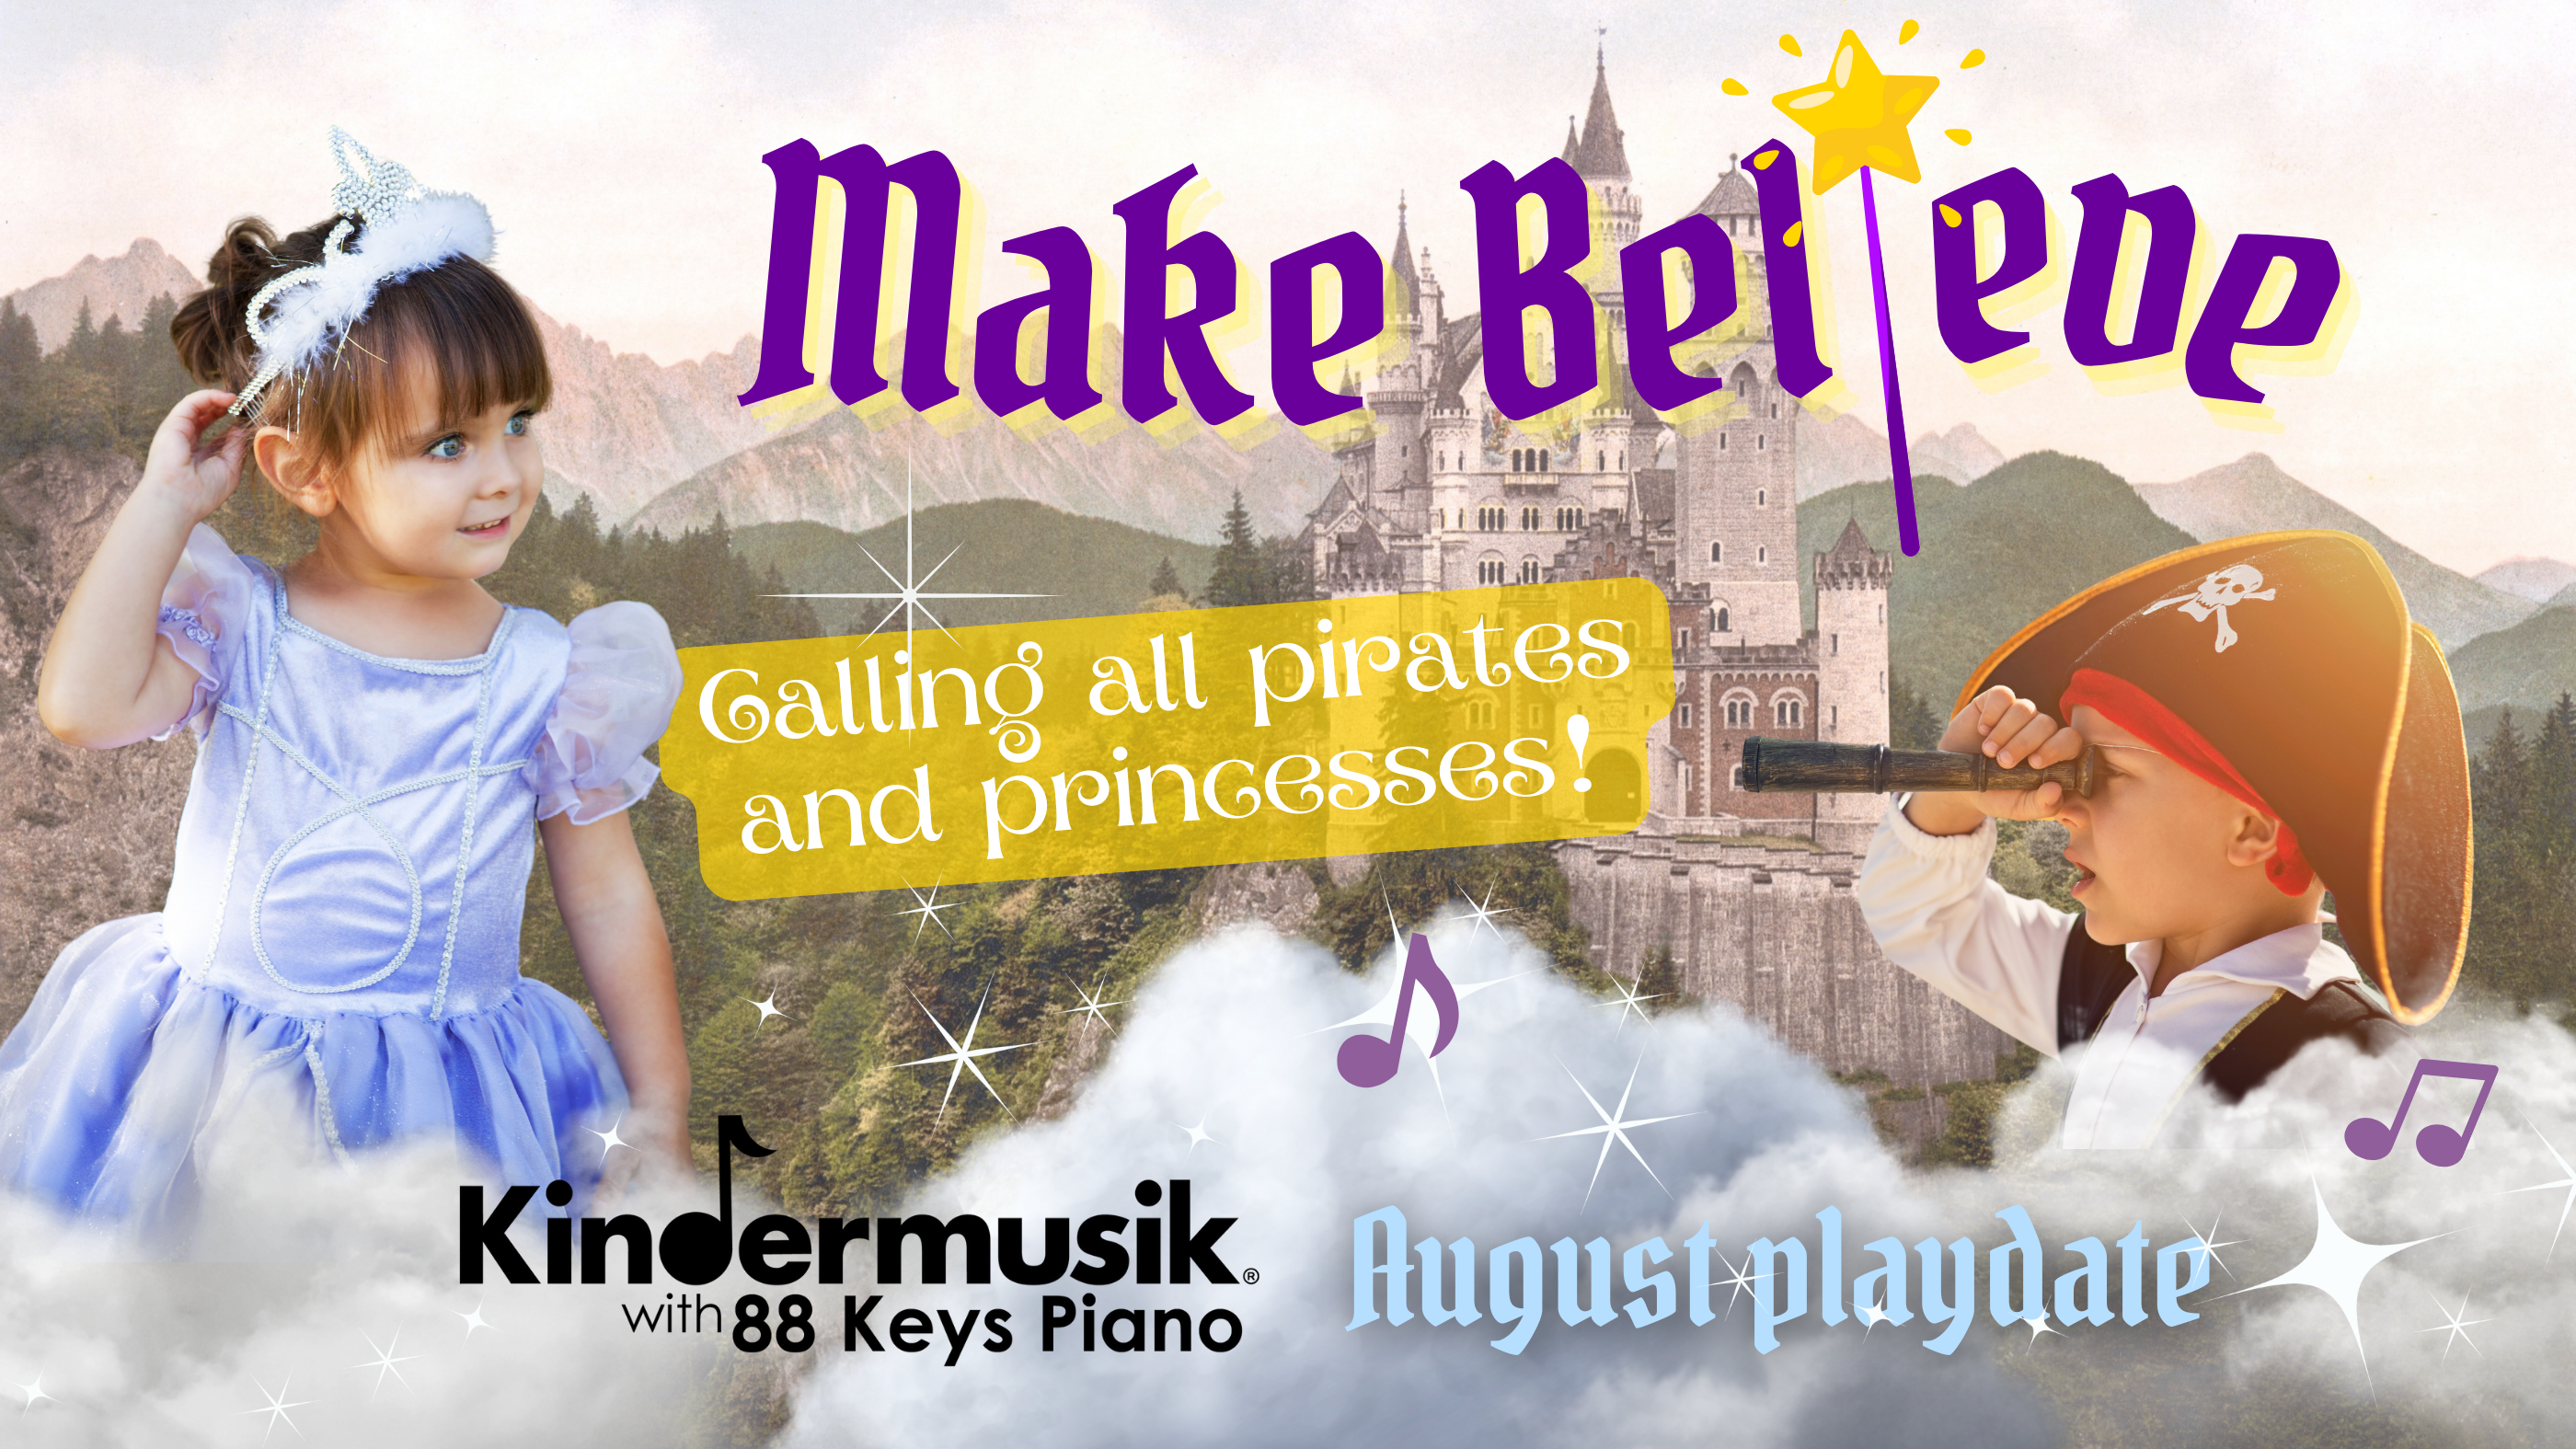 August Playdate: Make Believe!